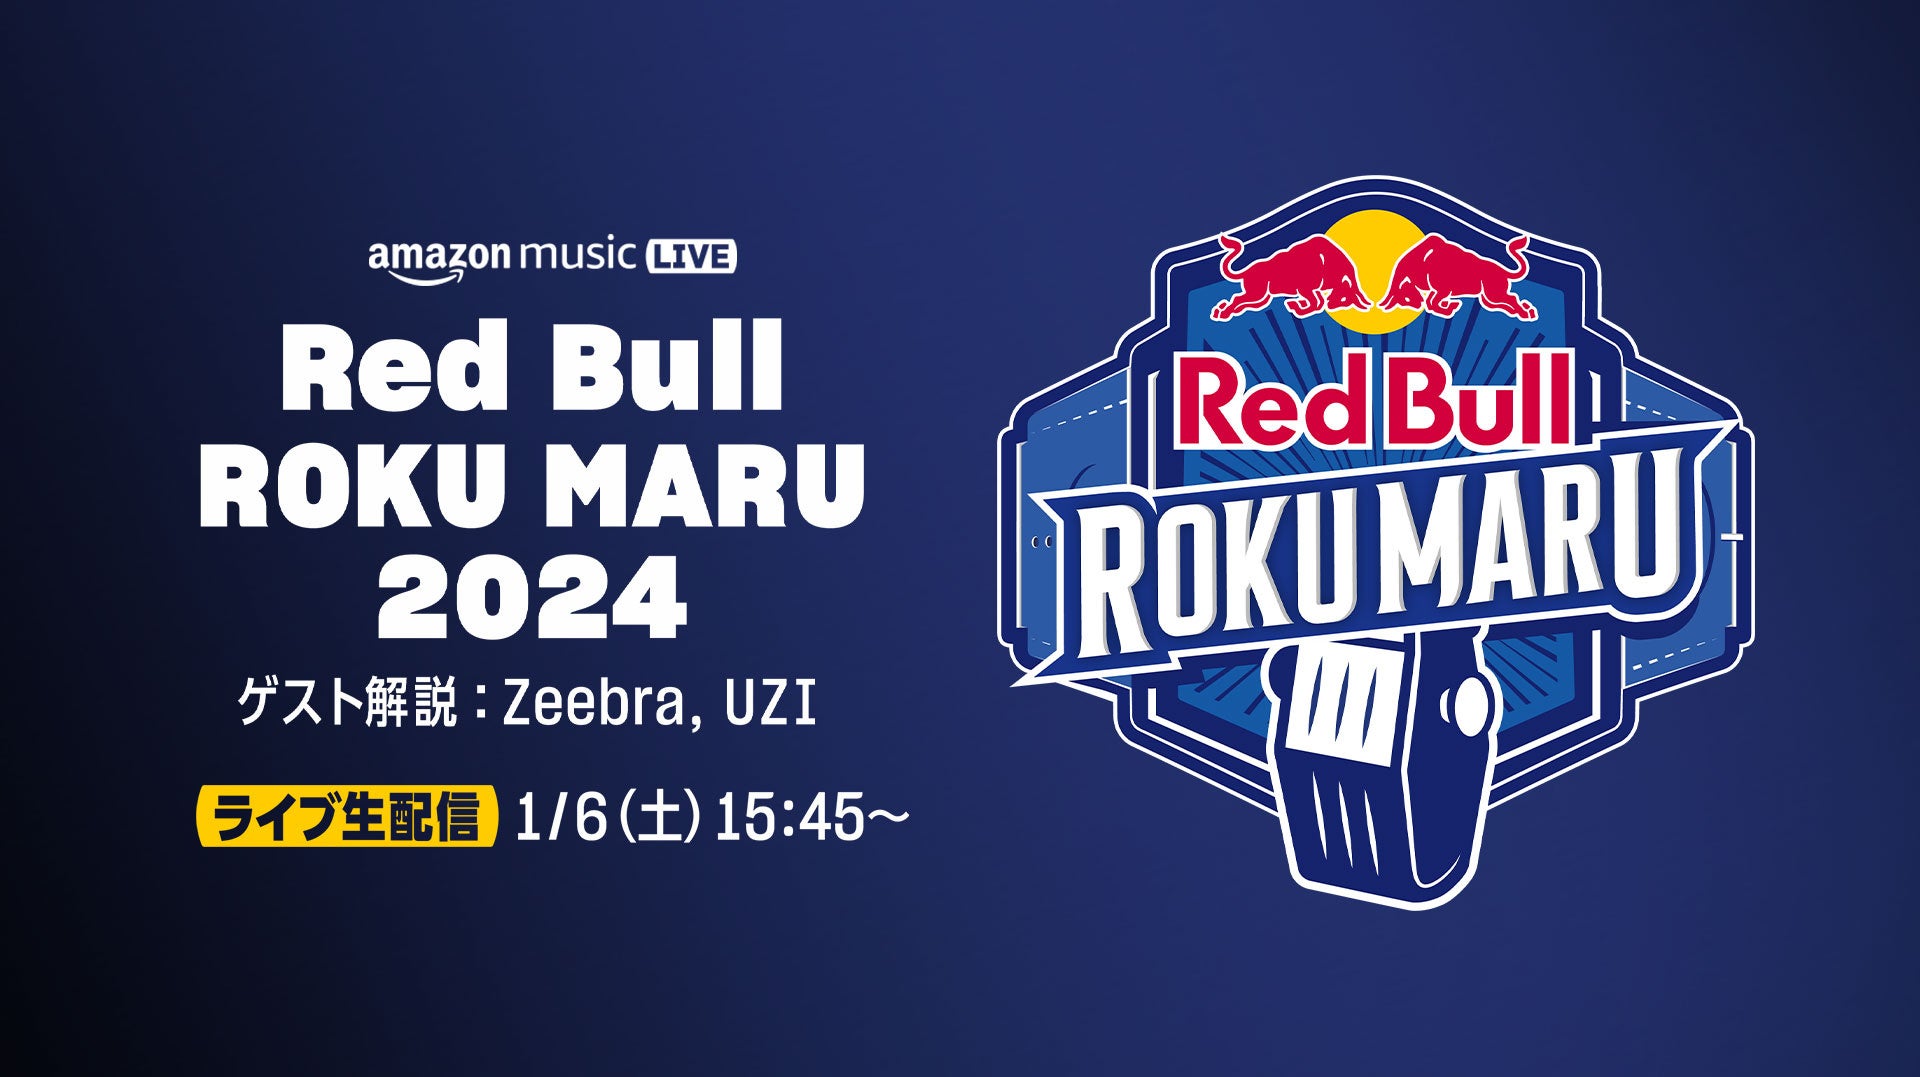 Amazon Music、レッドブル主催のフリースタイル・ラップバトル『Red Bull ROKU MARU 2024 』をTwitchにて生配信